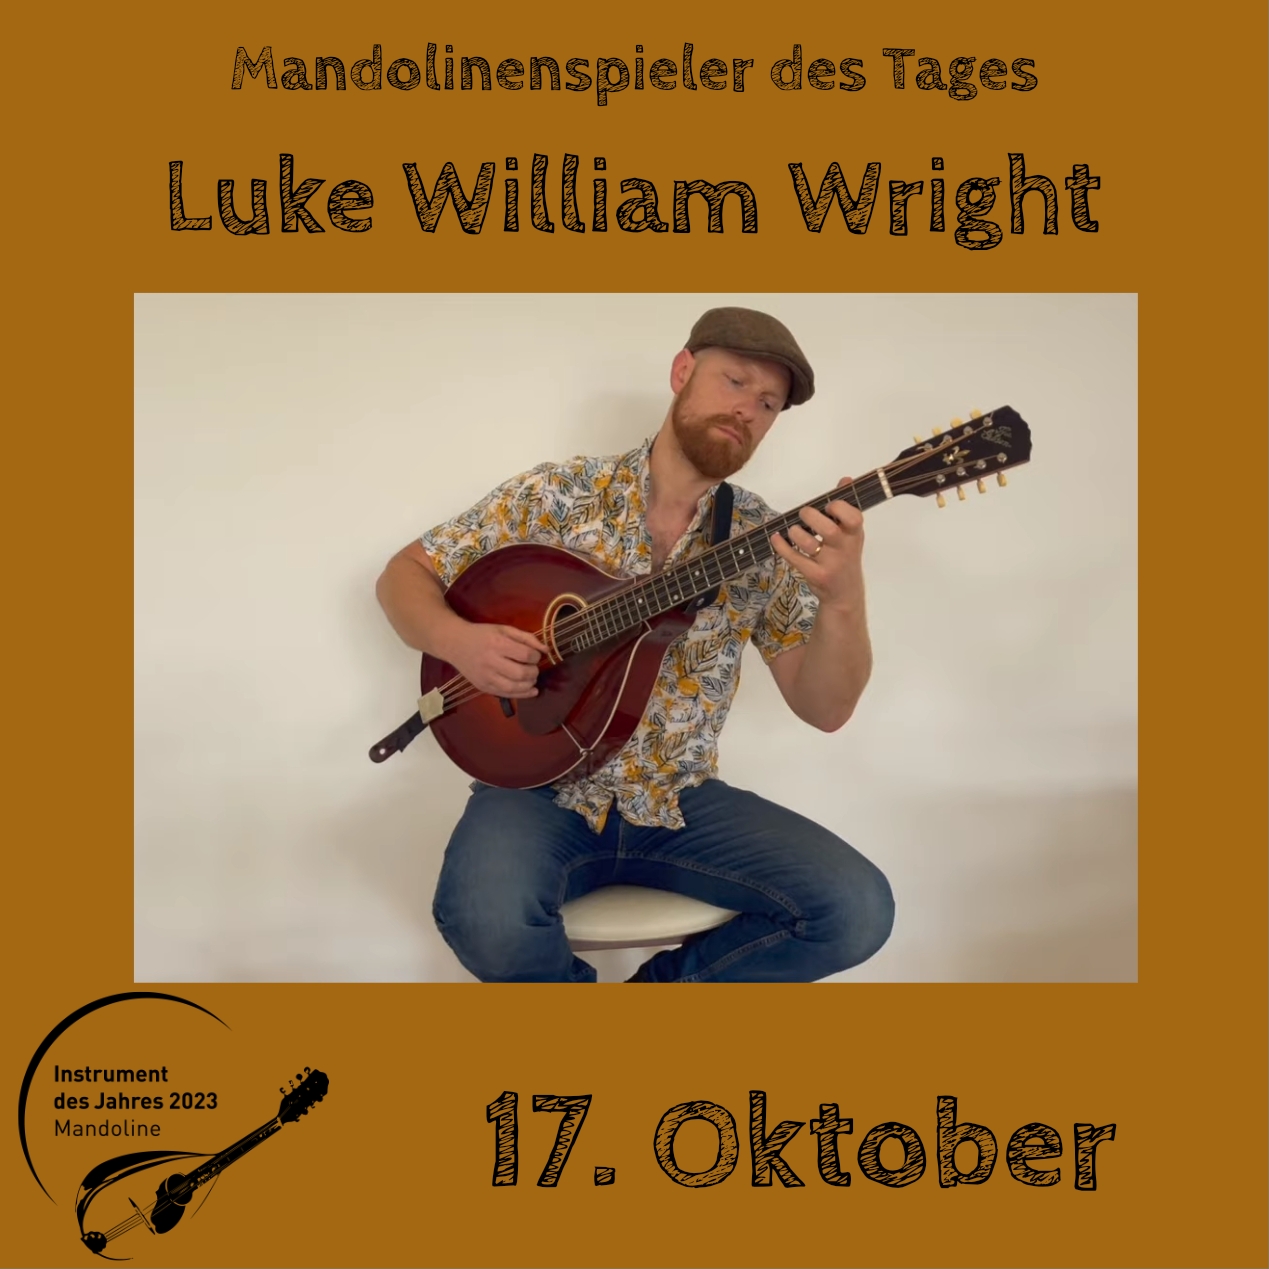 17. Oktober - Luke William Wright Instrument des Jahres 2023 Mandolinenspieler Mandolinenspielerin des Tages